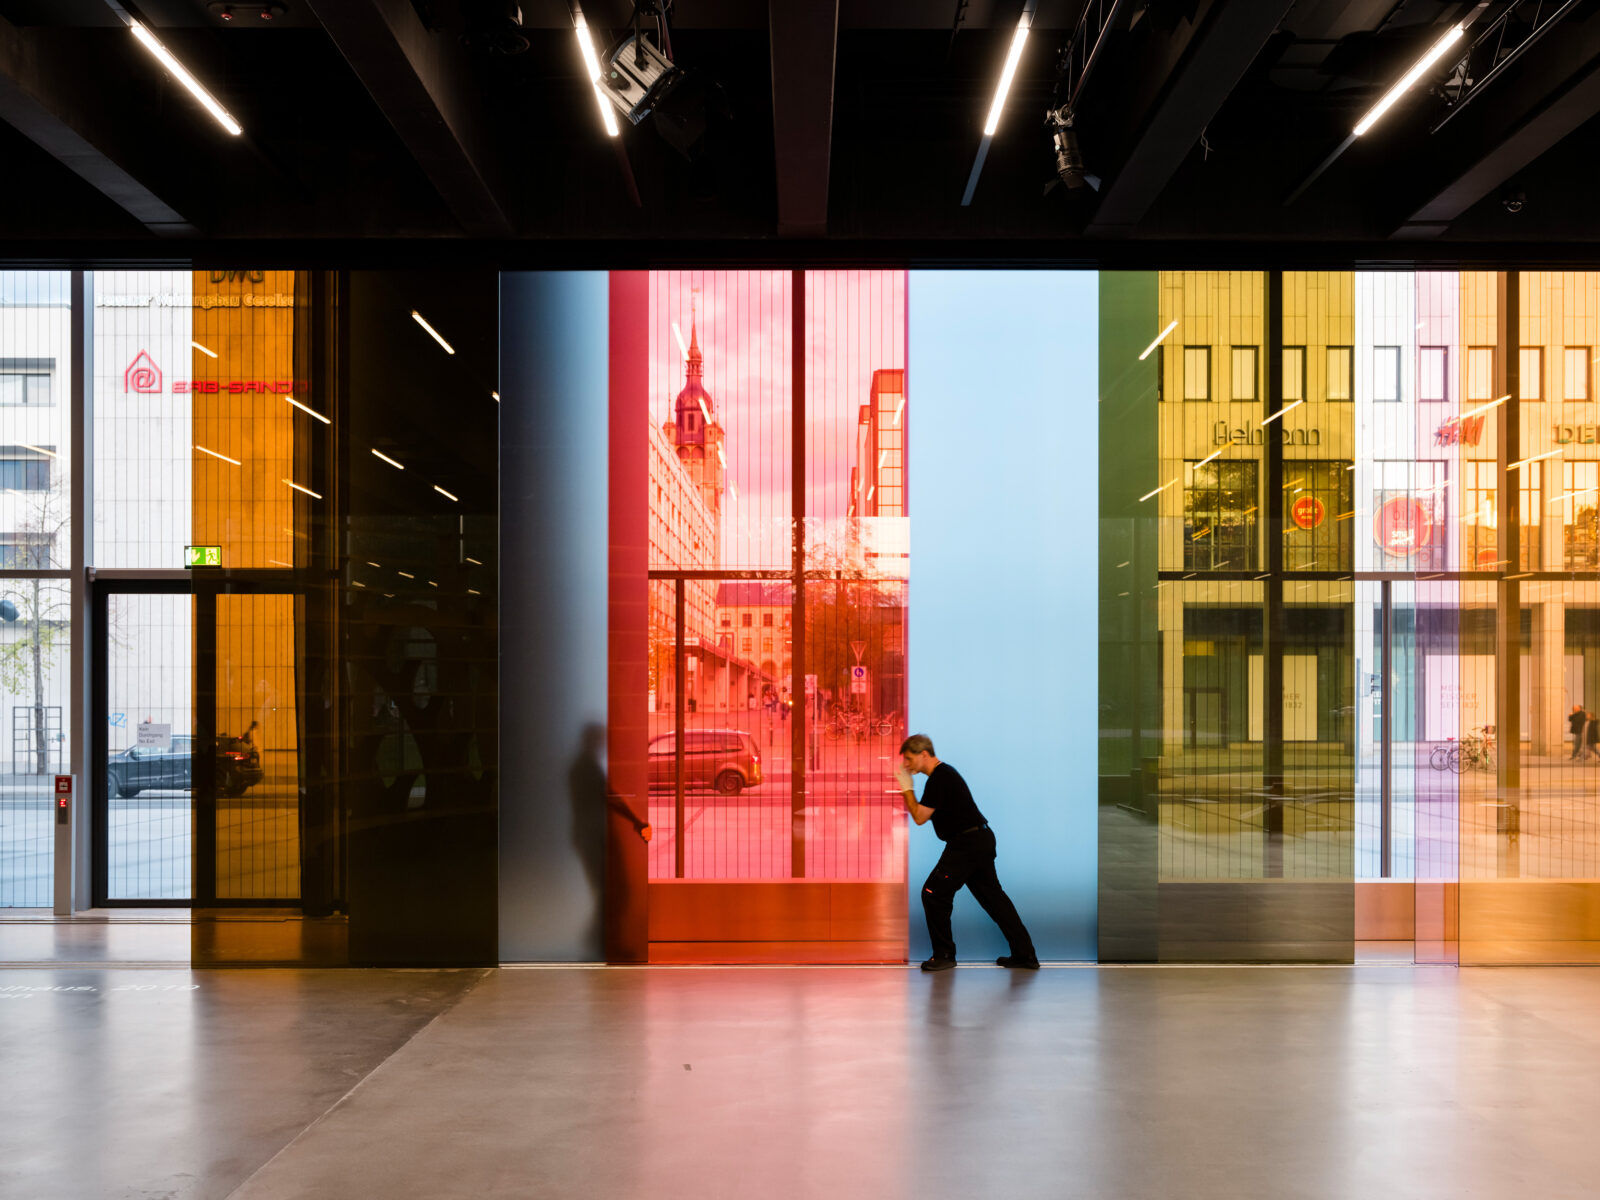 Große bunte, lichtdurchlässige Glassscheiben werden durch Männer verschoben. Das ist die Kunst am Bau im Bauhaus Museum Dessau.